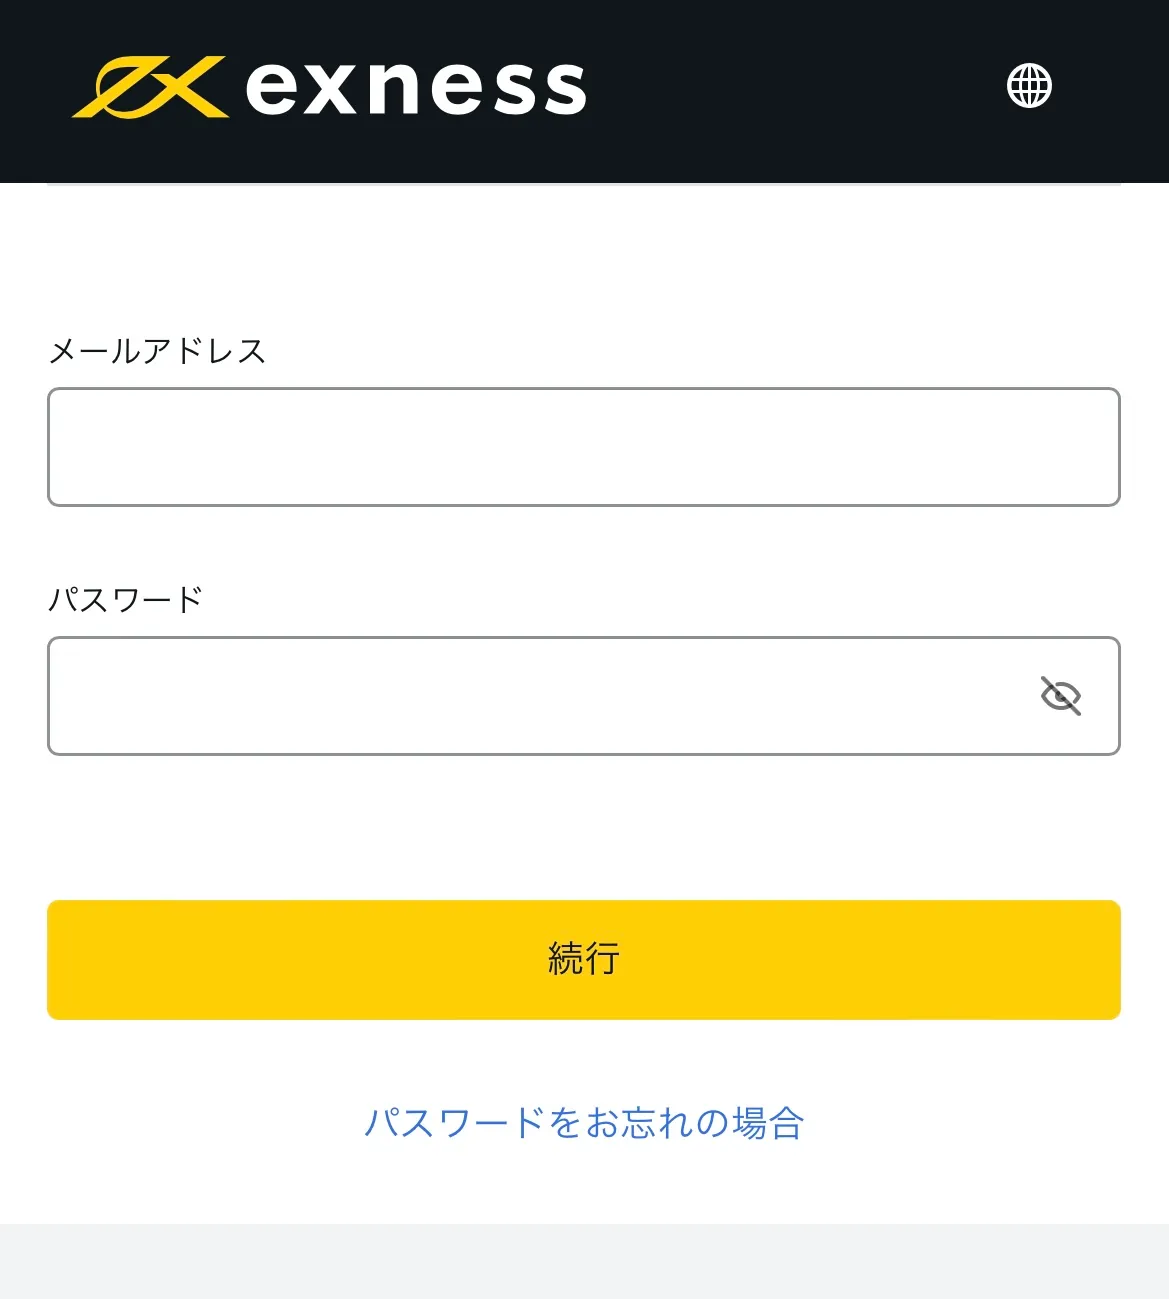 Exness公式サイトのログインフォーム